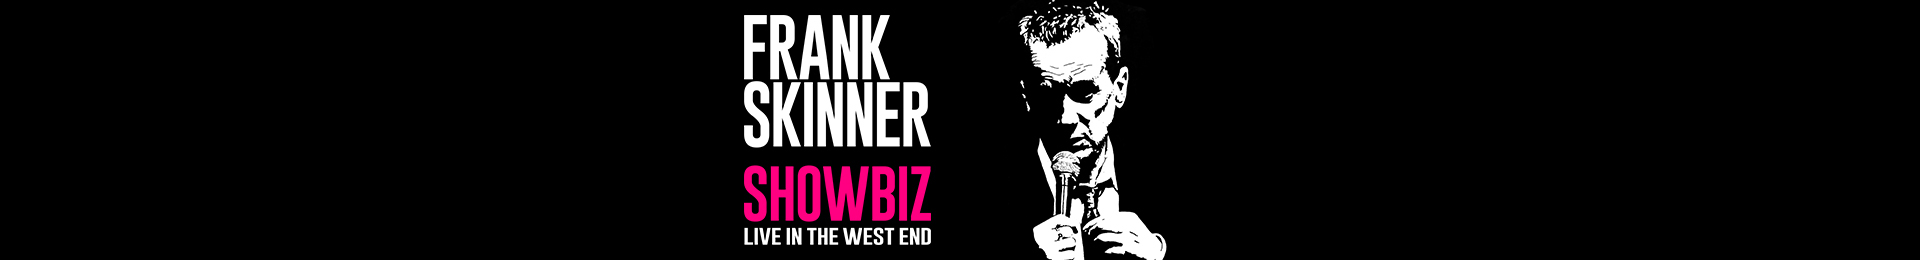 Frank Skinner Showbiz banner image